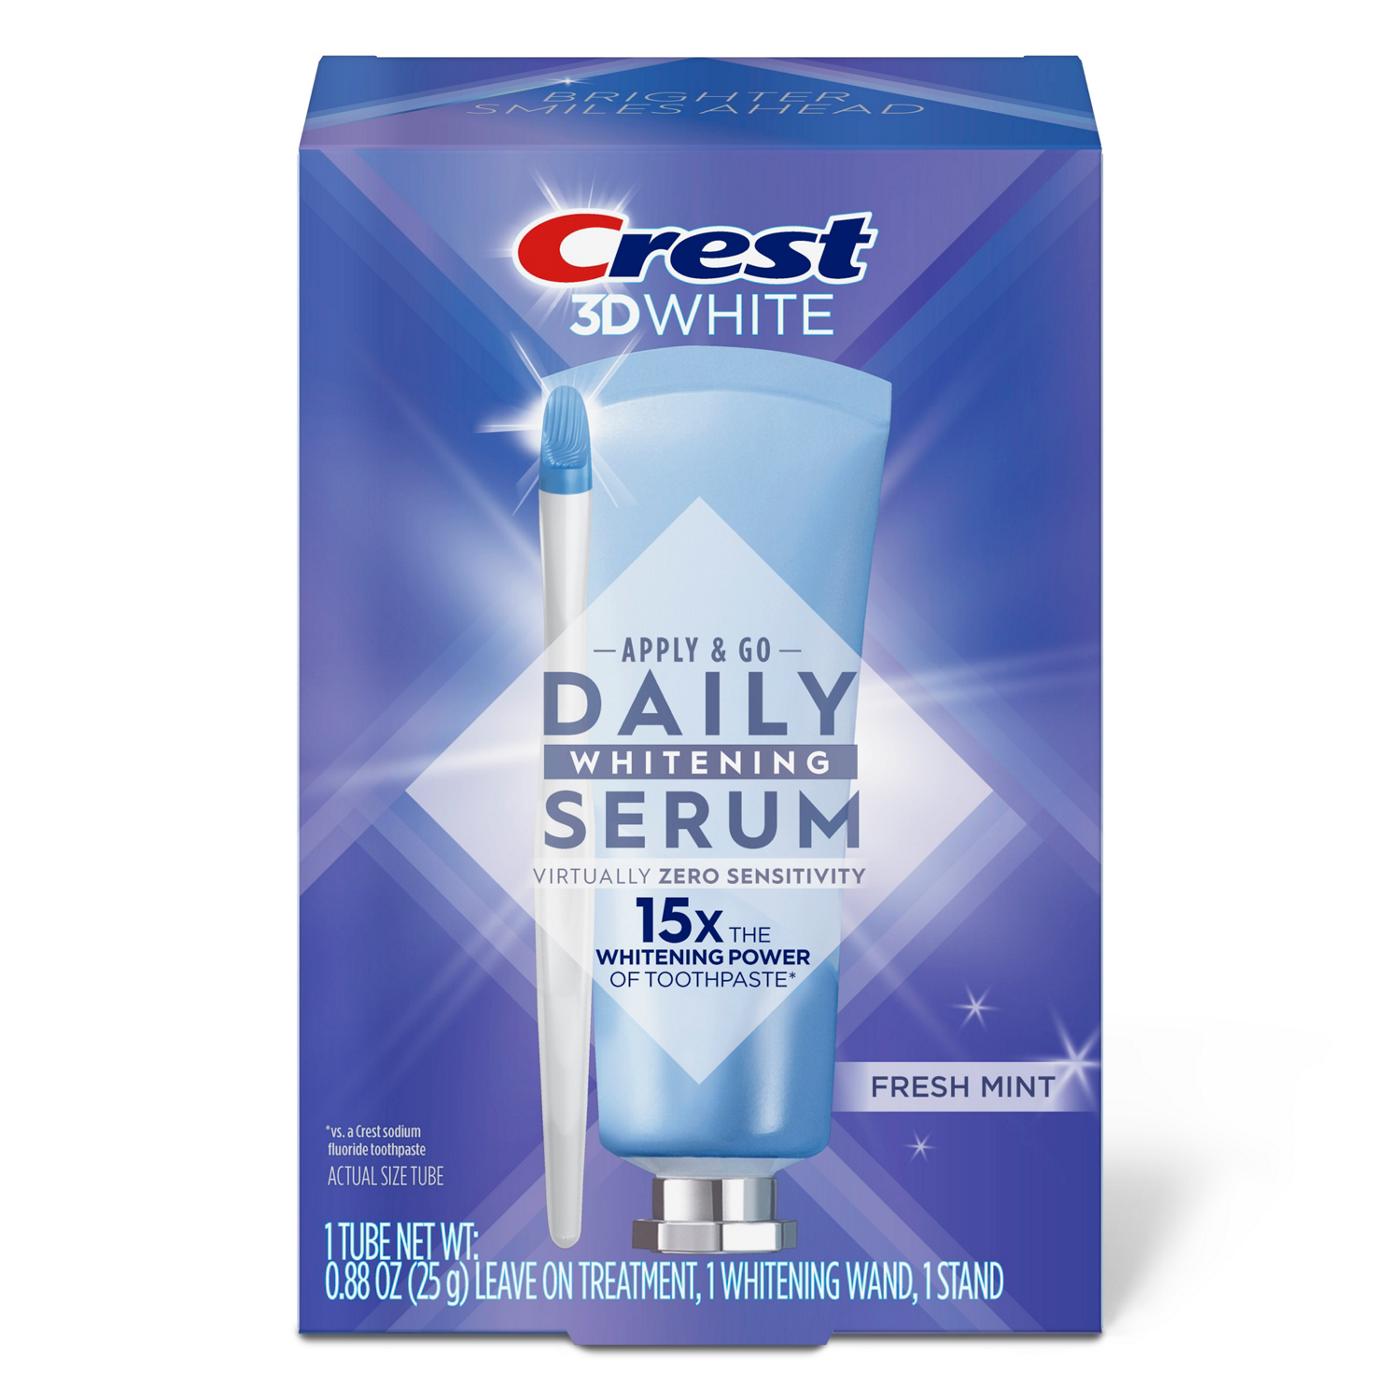 Crest 3D White Apply & Go Daily Whitening Serum Kit - Fresh Mint; image 3 of 10